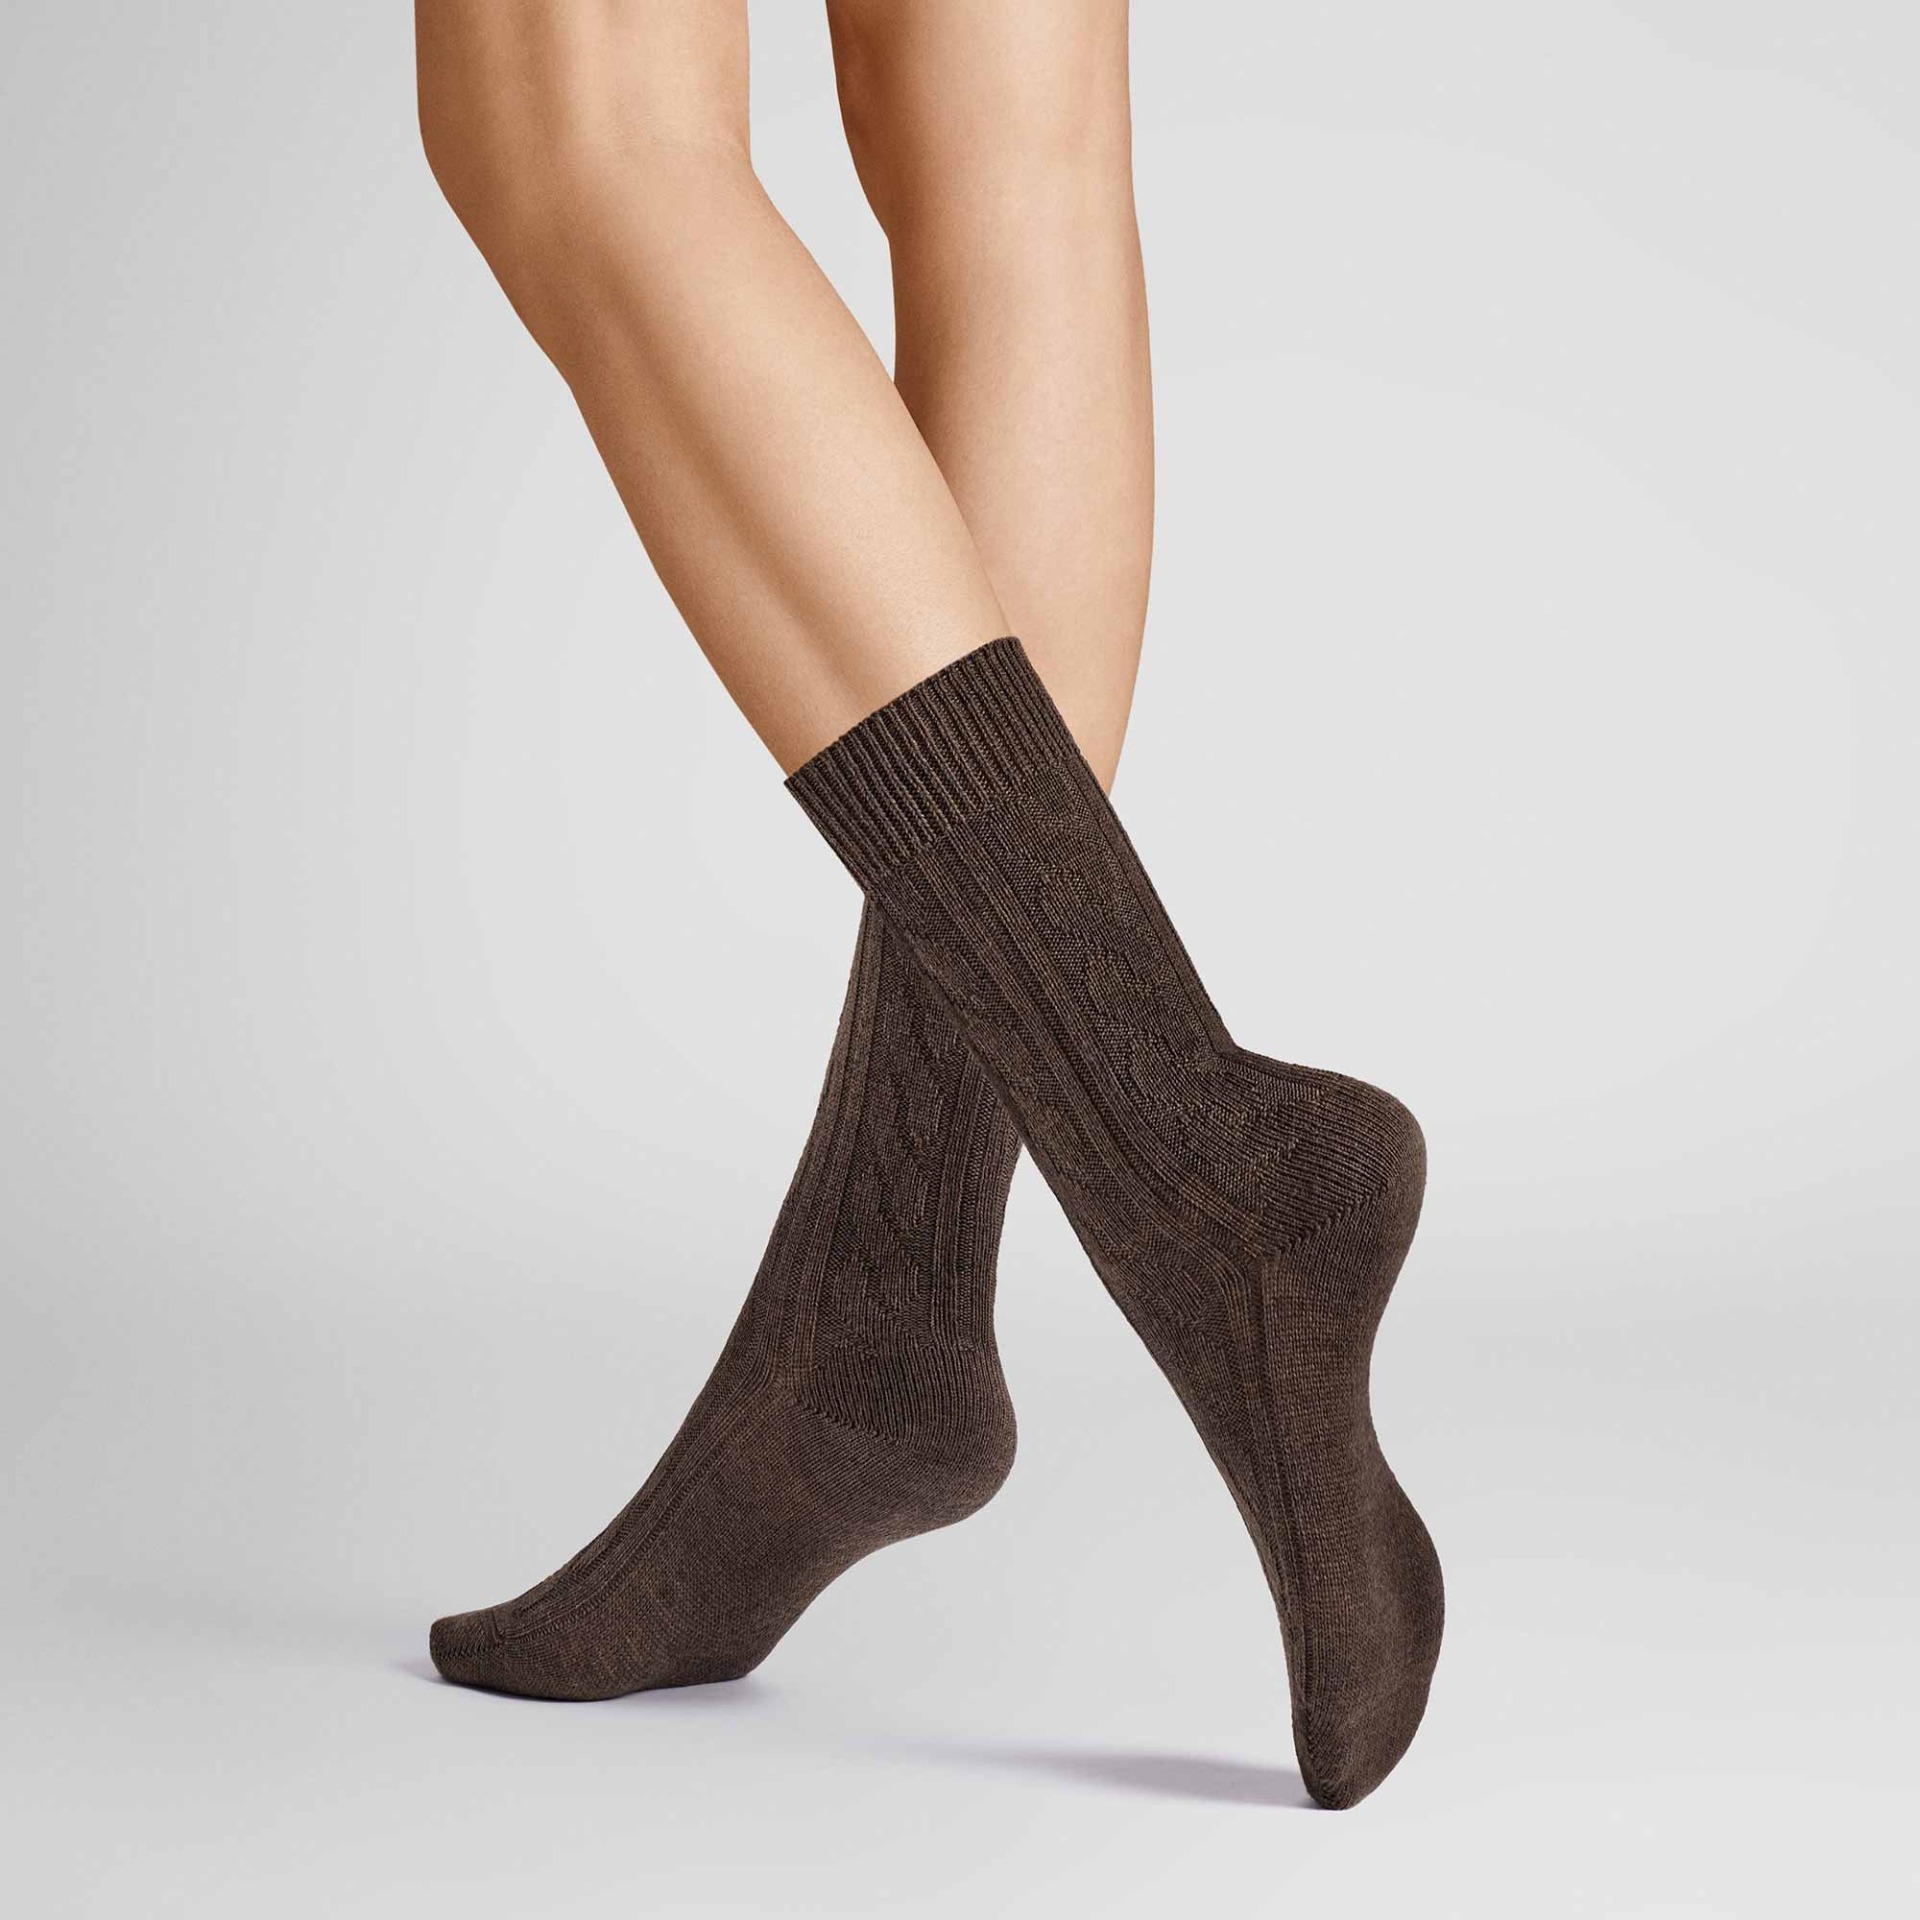 HUDSON Damen WINTER PLAIT -  39/42 - Wärmende Socken mit Zopf-Muster - Brown mel. 0763 (Braun)